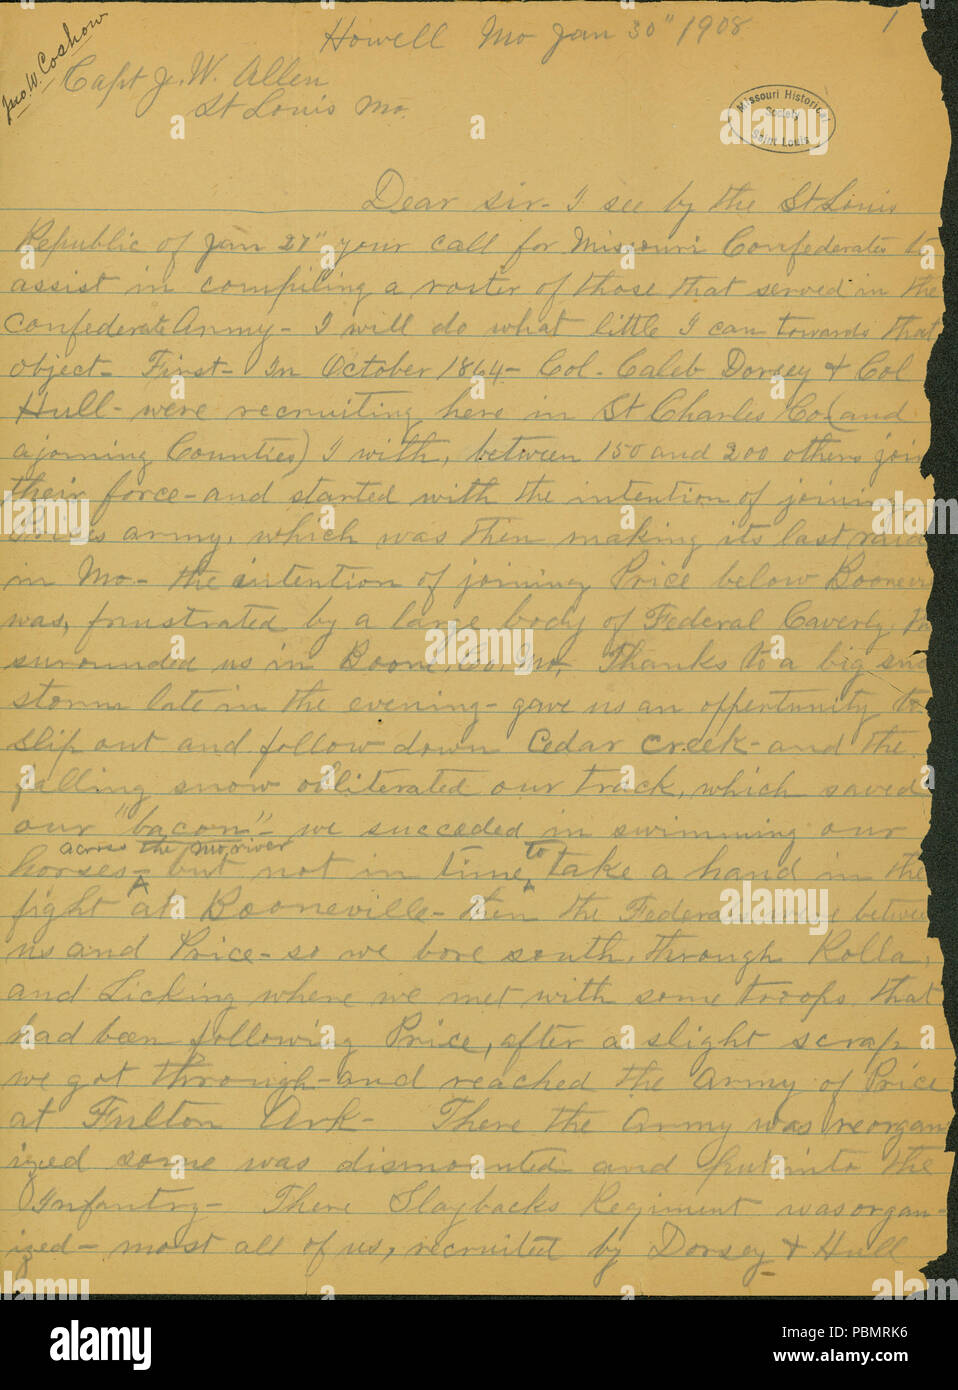 910 Lettre signée John W. Coshow, Howell, Missouri, dans J.W. (James Allen W. Allen), Saint Louis, le 30 janvier, 1908 Banque D'Images